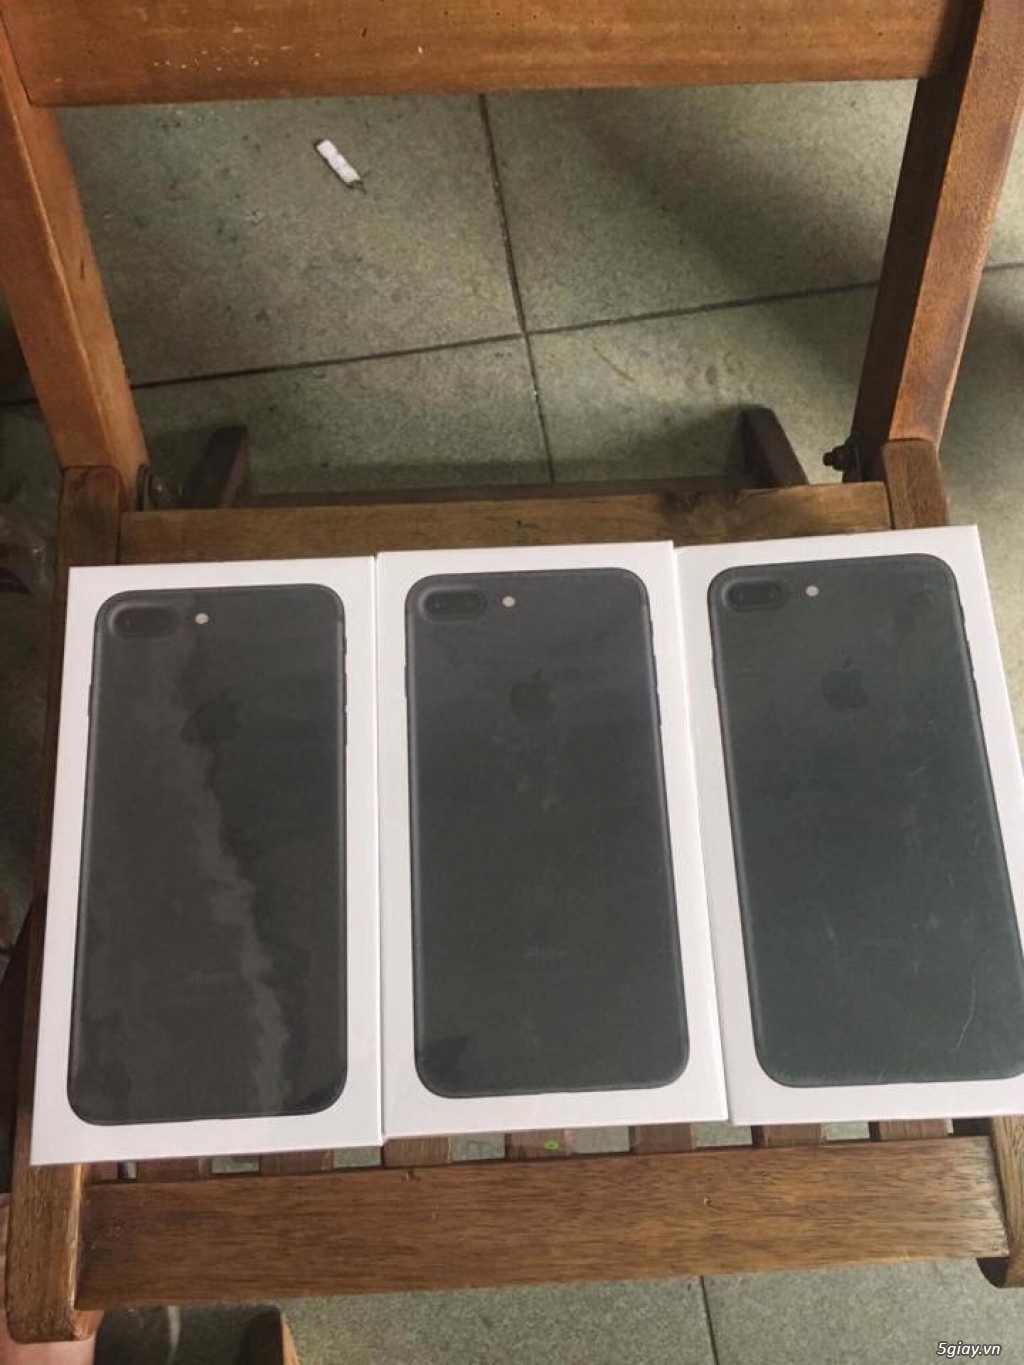 [ Đôn giá ] Banh sàn iphone 7 plus 32gb đen new 100% end 23h59p ngày 31/08/2017